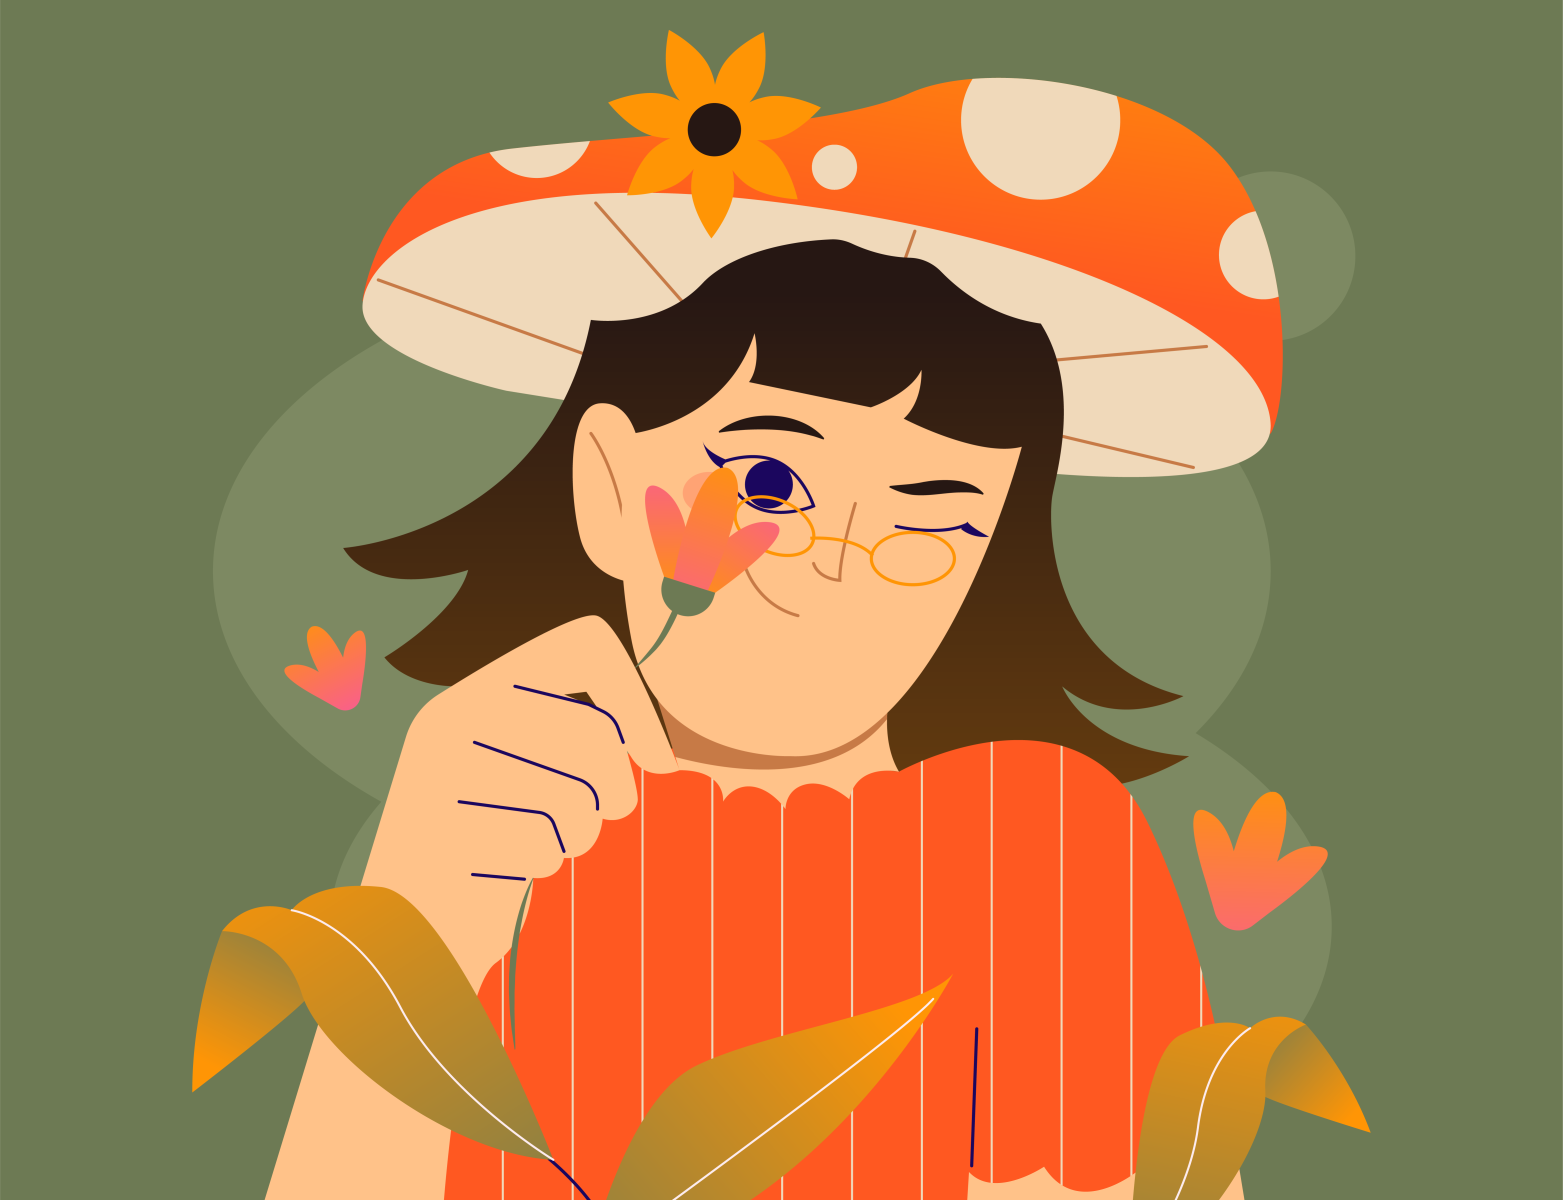 Mushroom Flower Girl by Dorothy Livelo on Dribbble